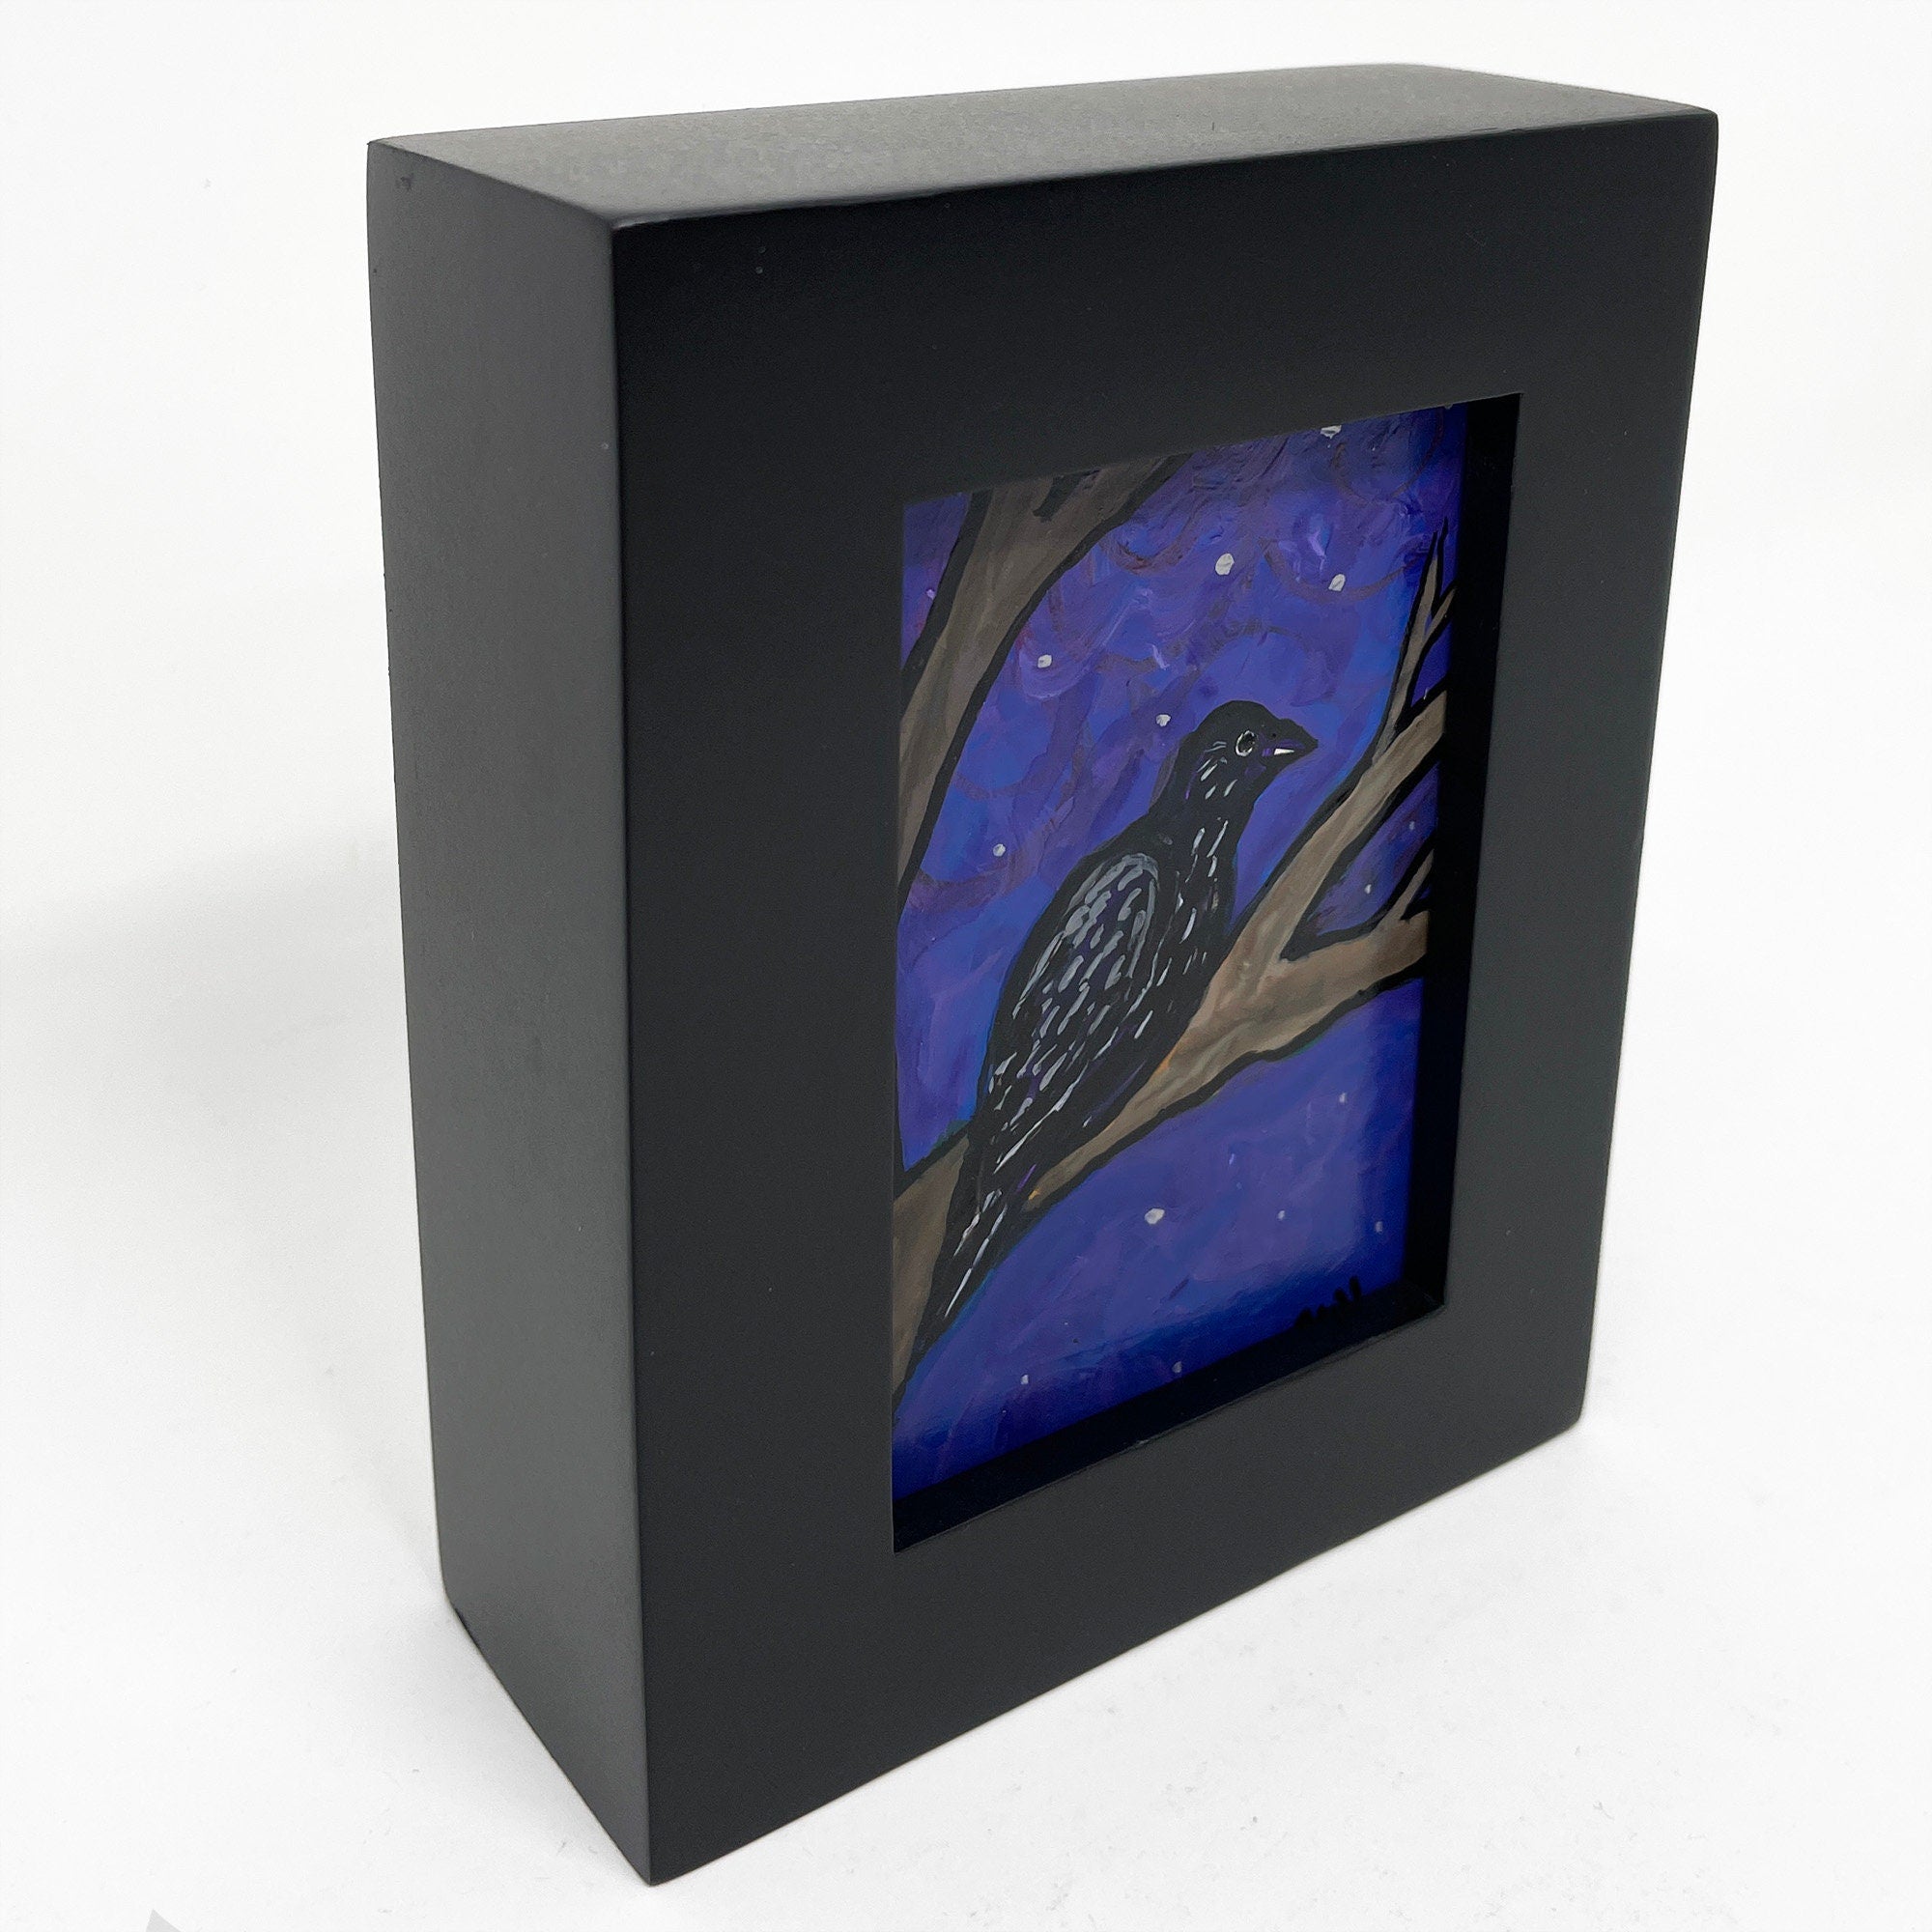 Small Raven Painting - Mini Framed Raven Art - Original Bird Artwork - Night Scene - Bird Lover Gift